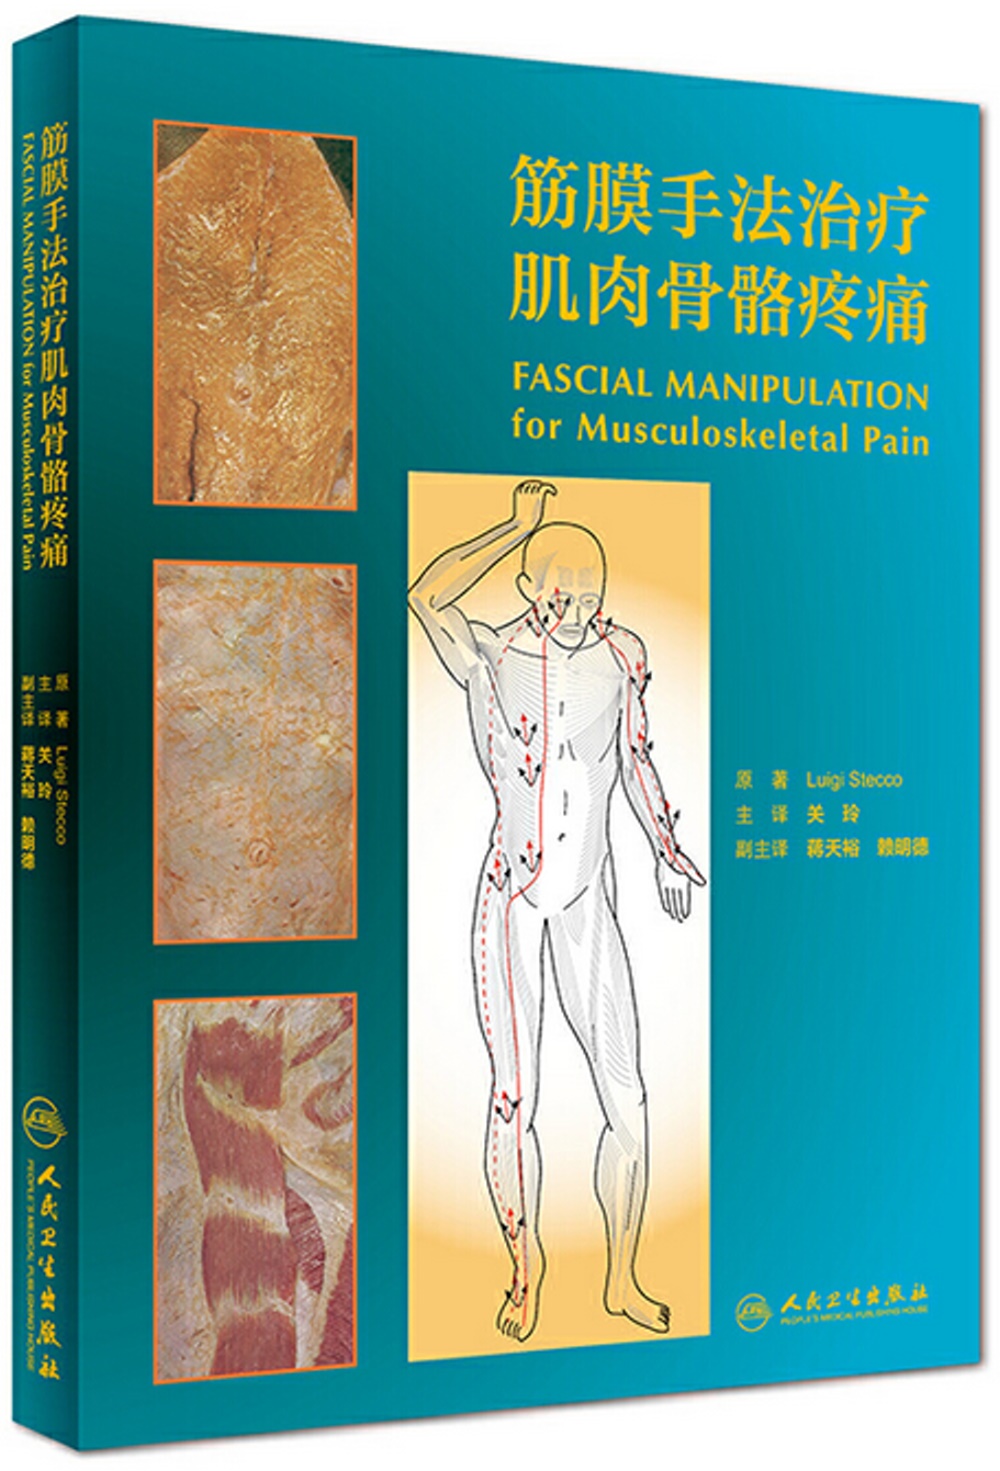 筋膜手法治療肌肉骨骼疼痛（翻譯版）